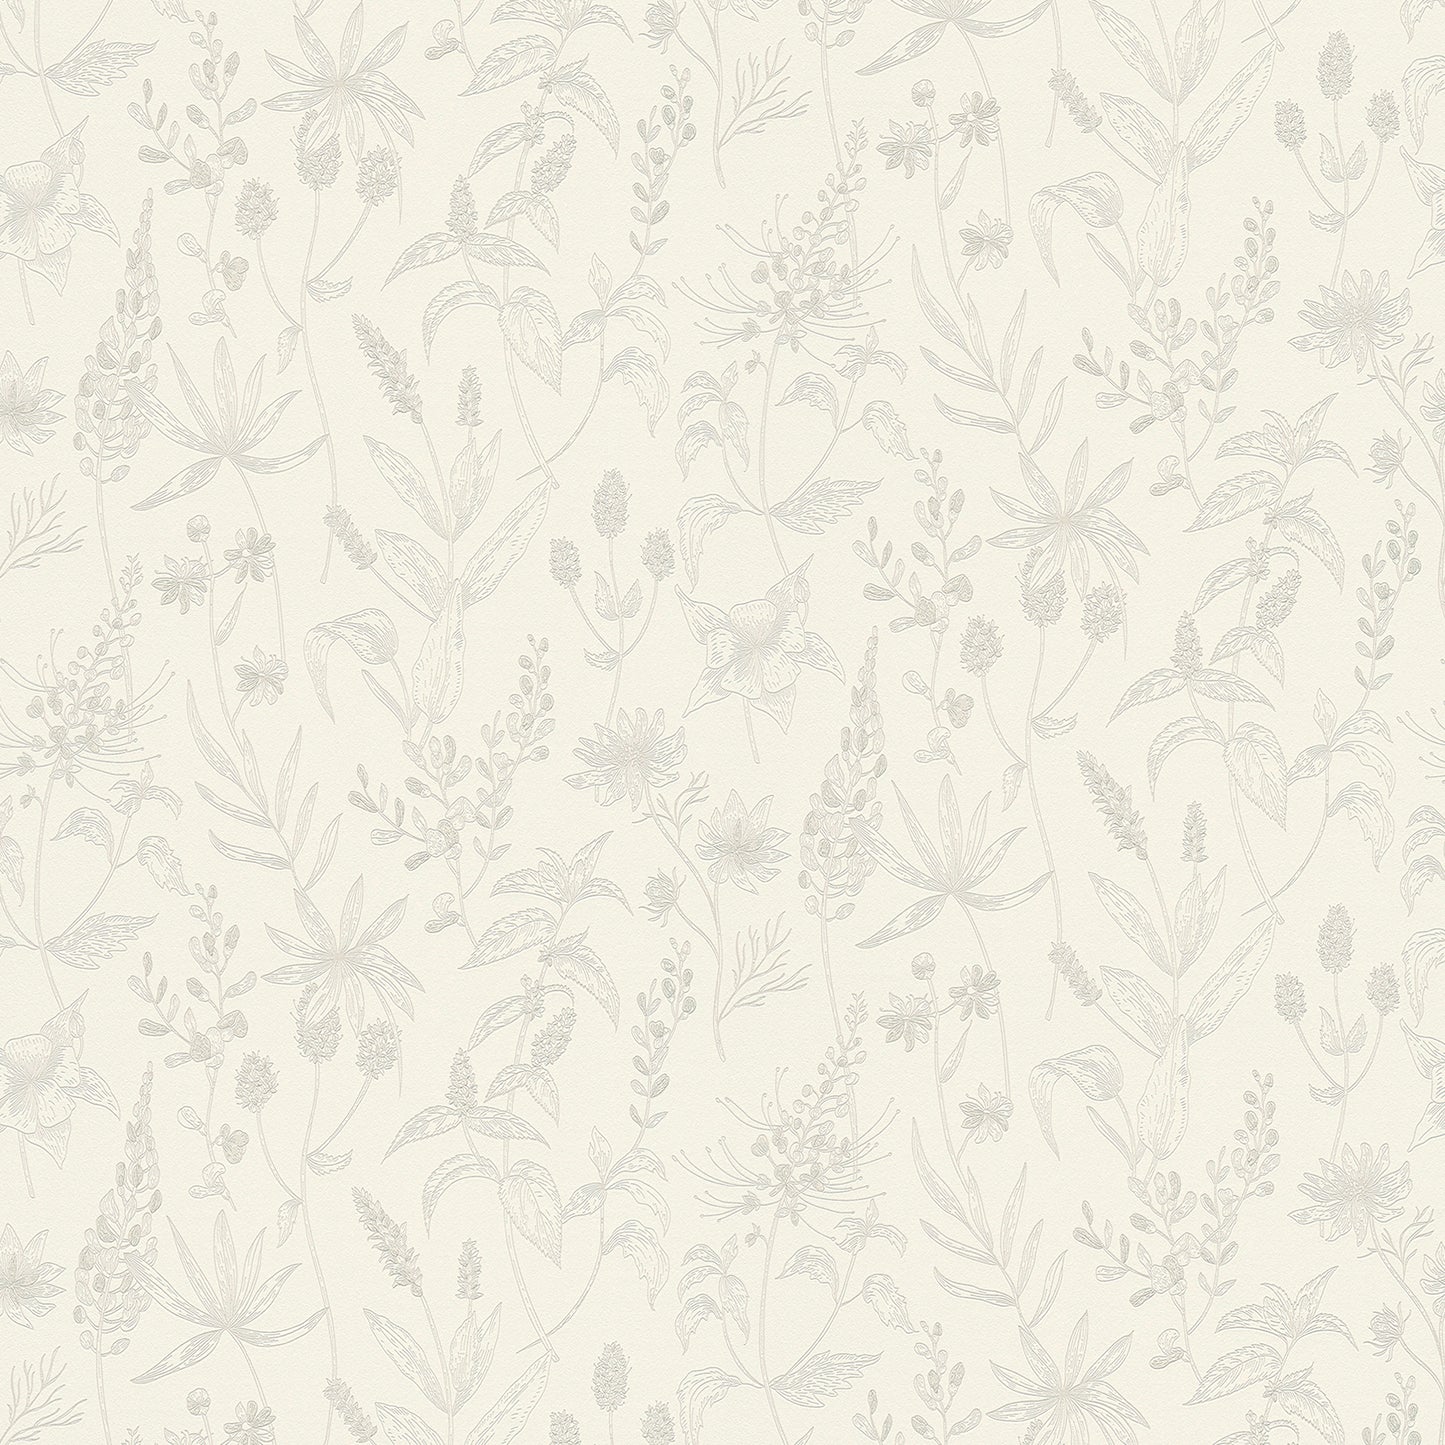 Search 2979-37363-1 Bali Nami White Floral White by Advantage Wallpaper